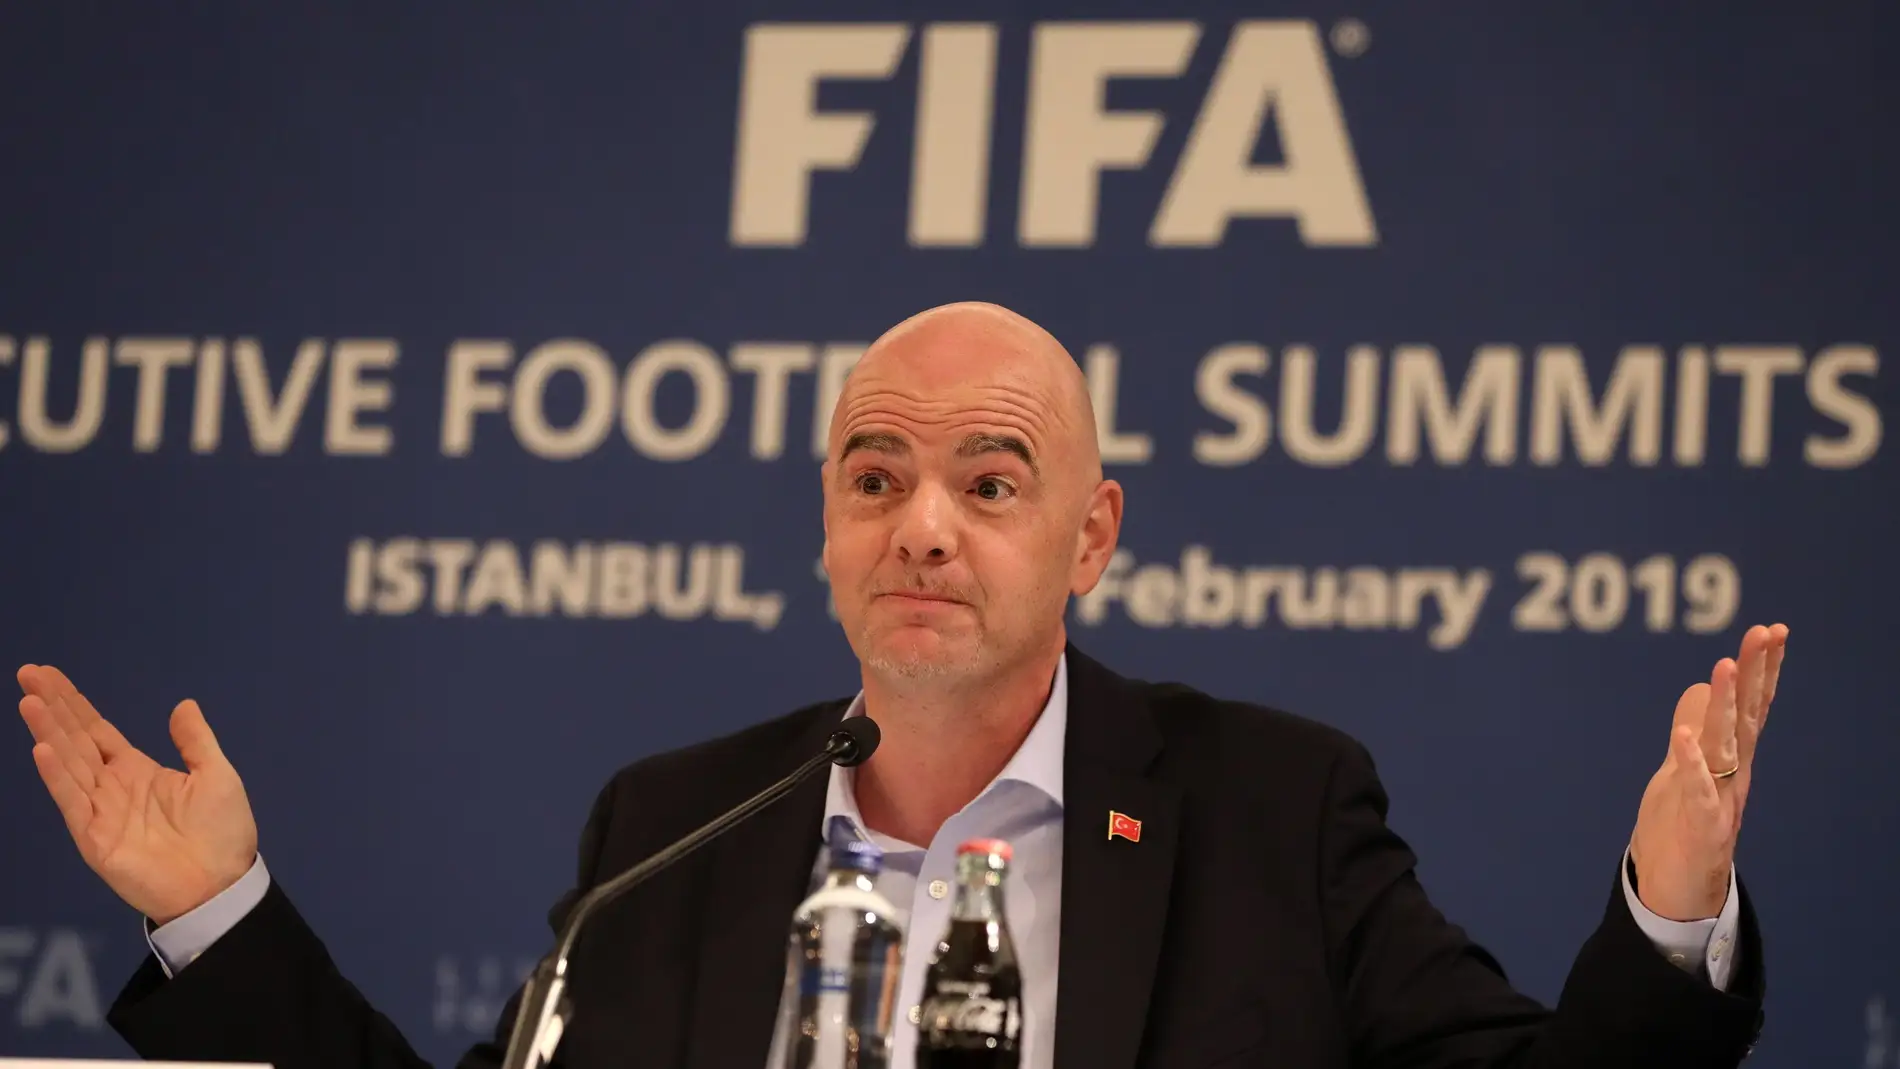 Arabia Saudí y la FIFA ultiman un millonario acuerdo de patrocinio 